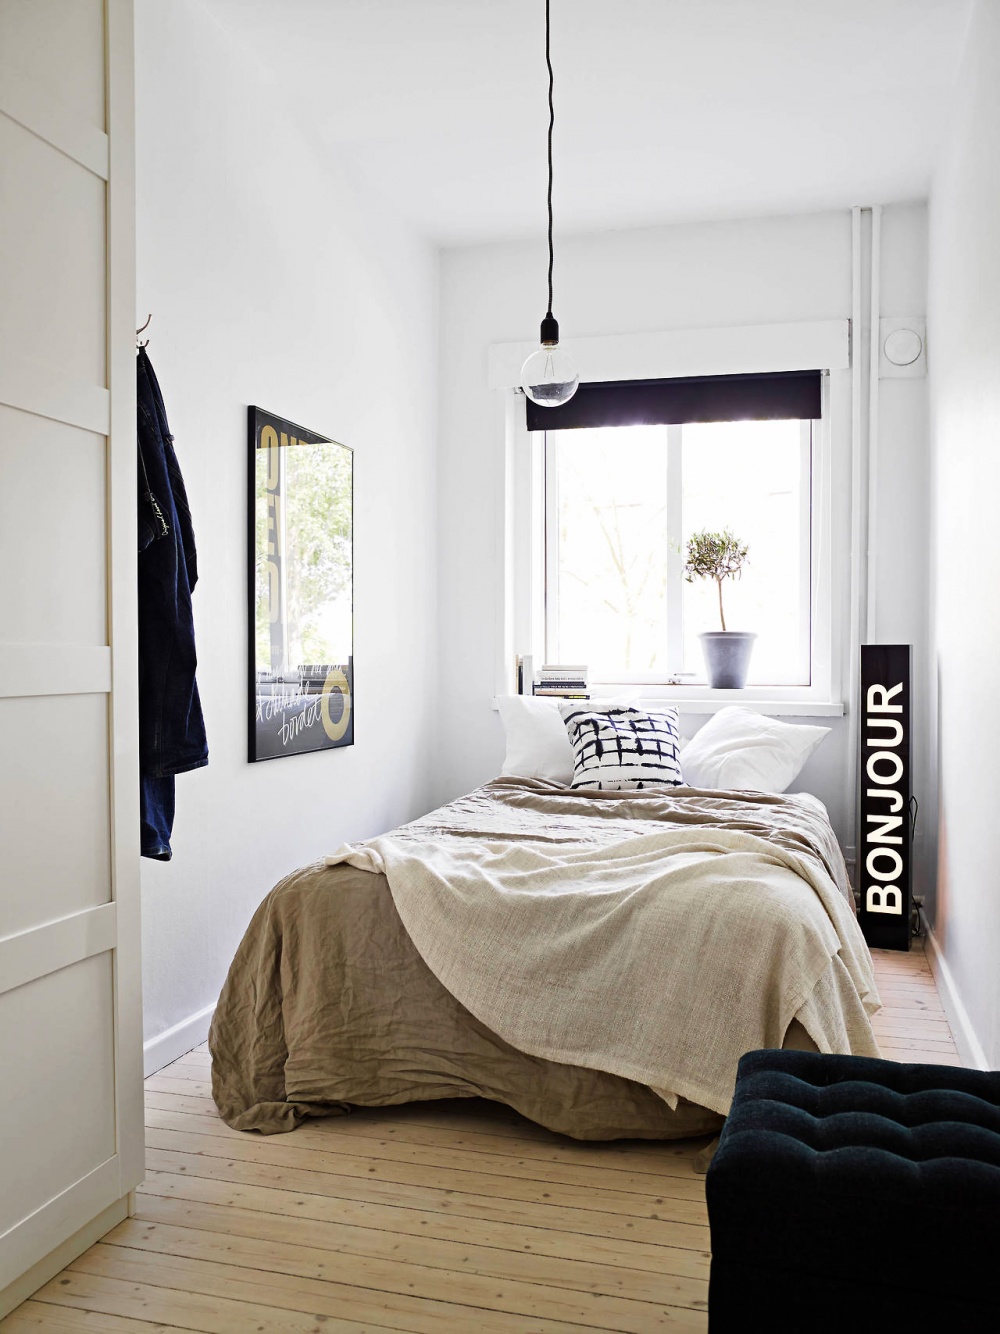 Ảnh: Giải pháp thiết kế nội thất cho phòng ngủ diện tích nhỏ 9